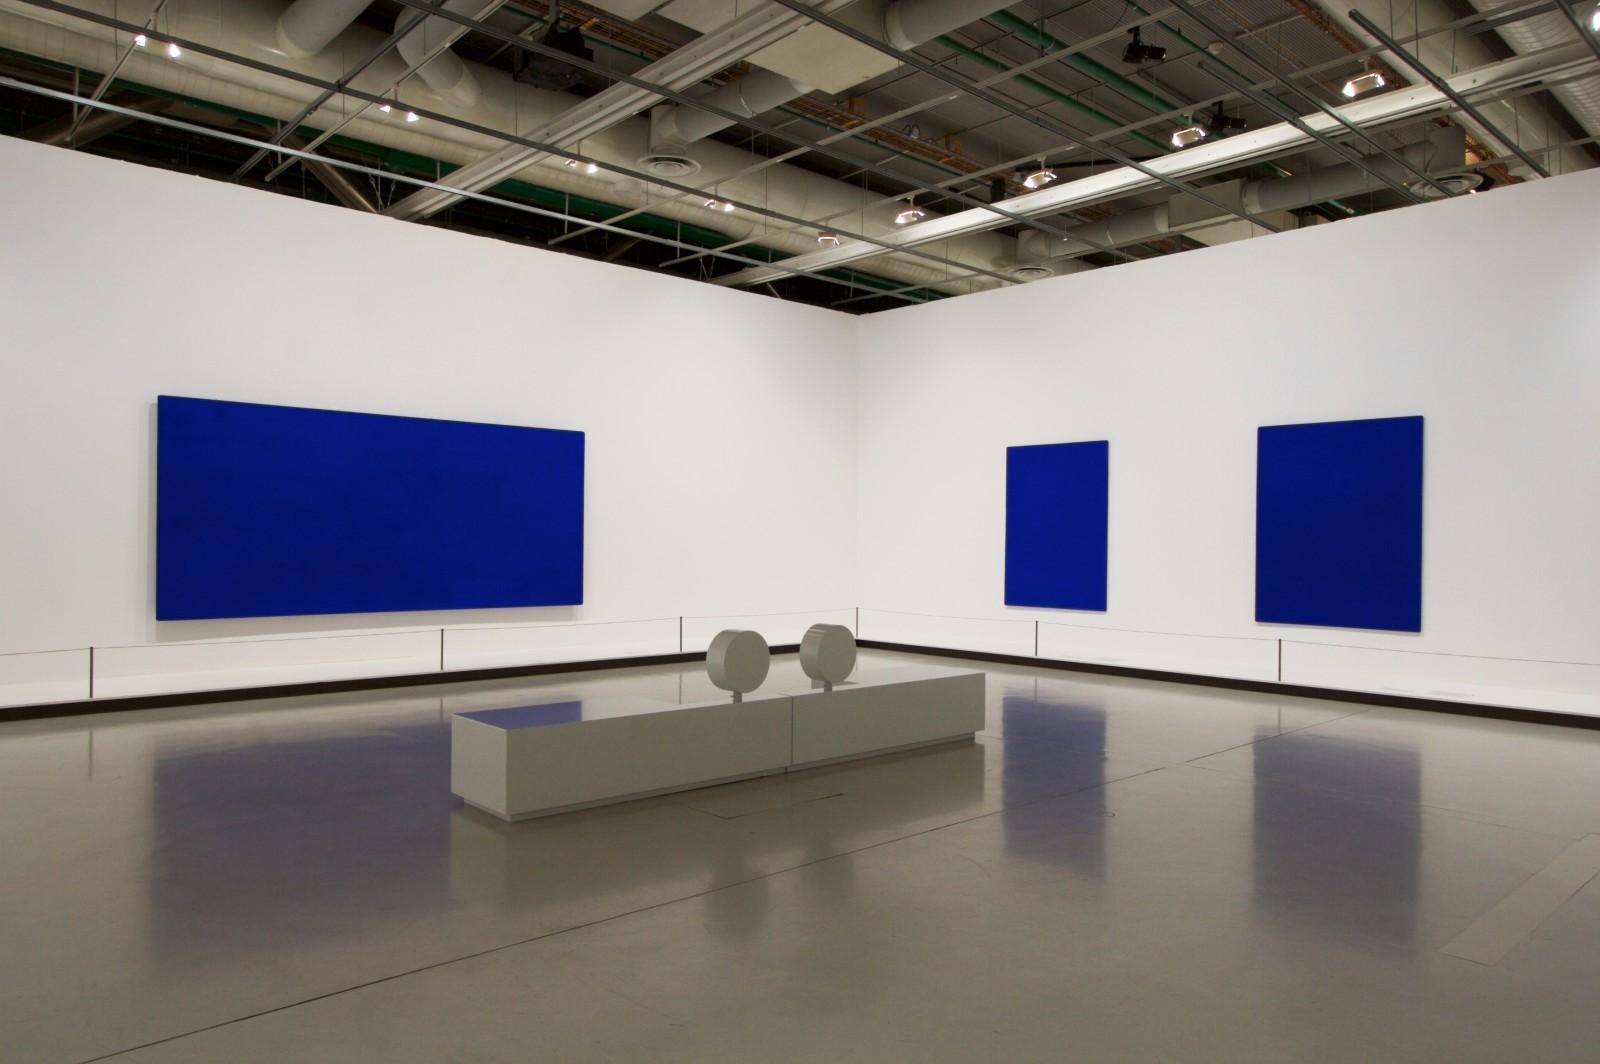 View the exhibition, "Yves Klein Corps, couleur, immatériel", Centre Georges Pompidou, 2007